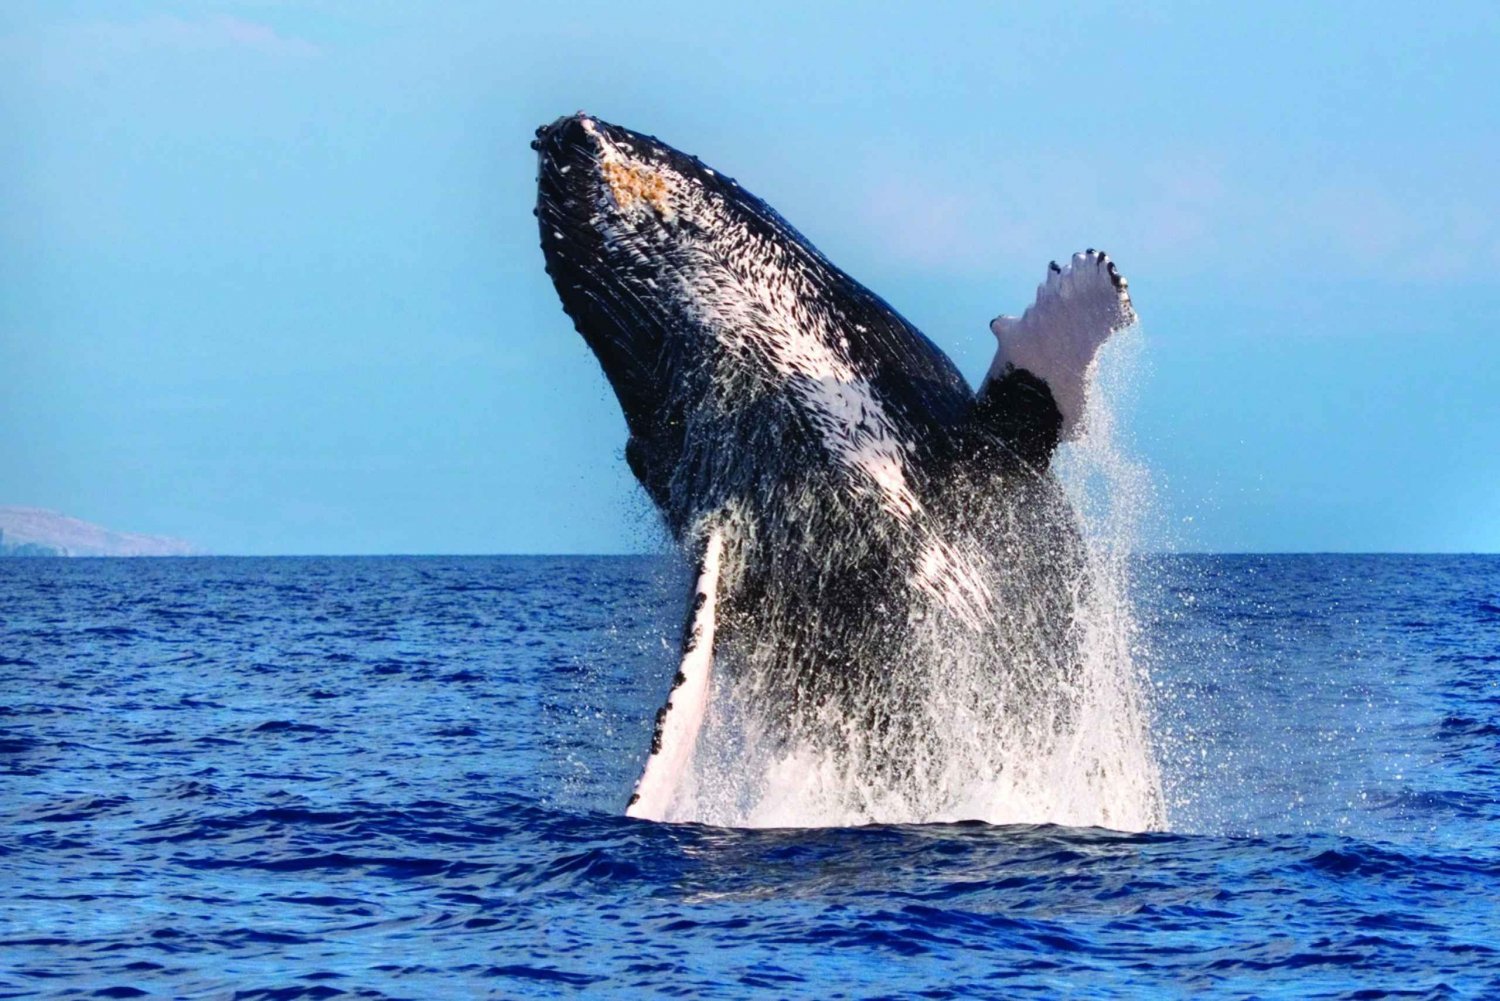 Maalaea: 2-godzinna obserwacja wielorybów w małej grupie